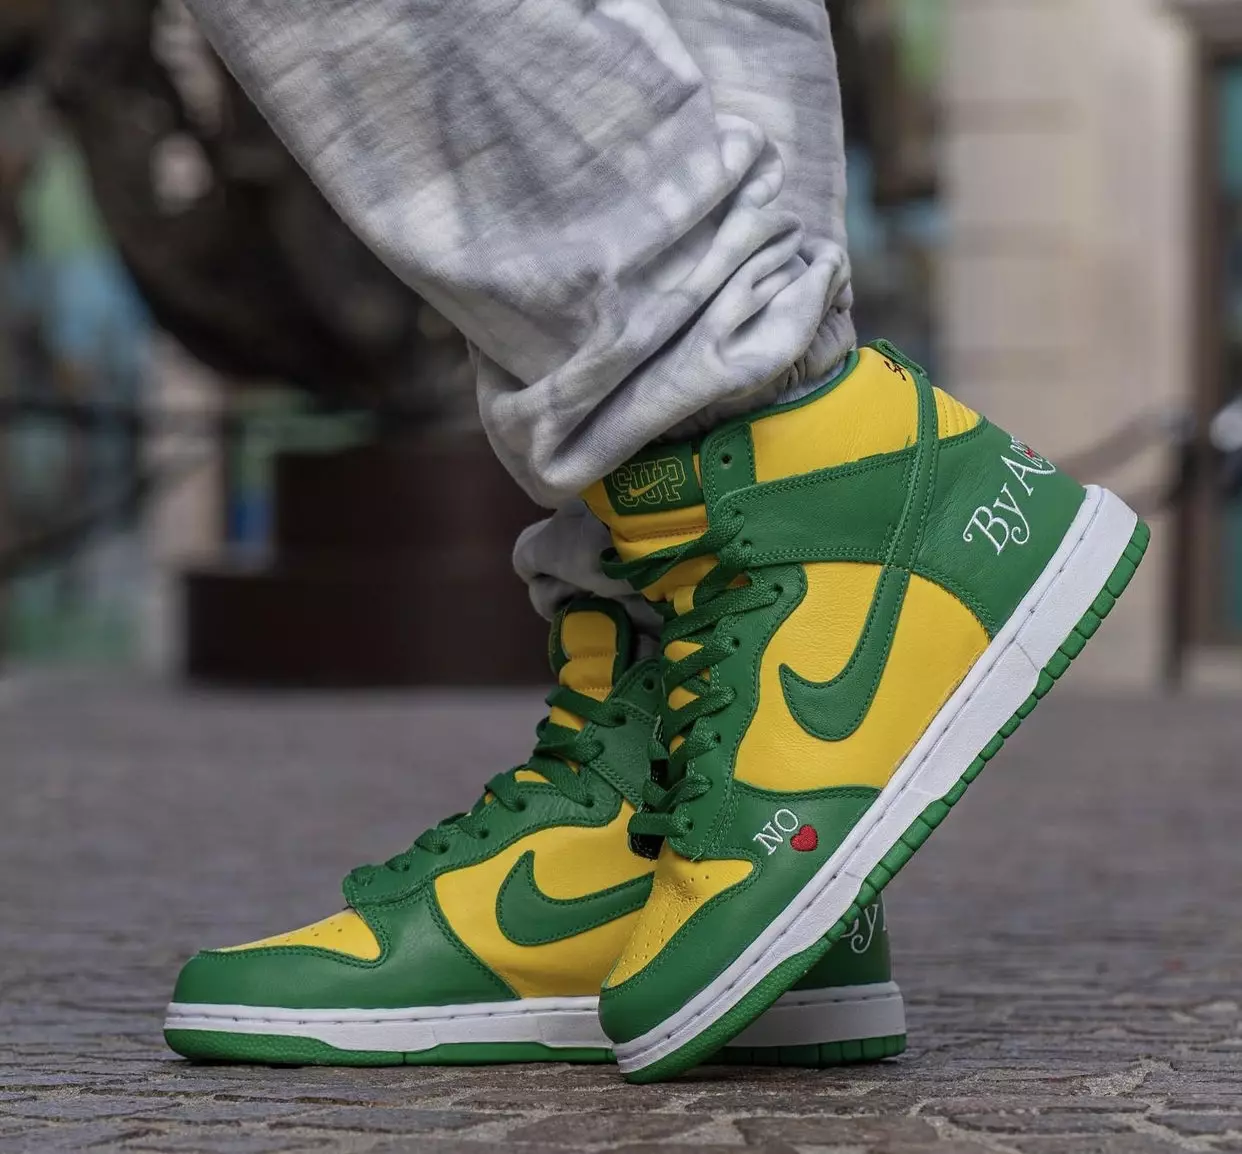 Supreme Nike SB Dunk High Бразил ямар ч аргаар хамаагүй DN3741-700 худалдаанд гарсан огноо хөл дээр